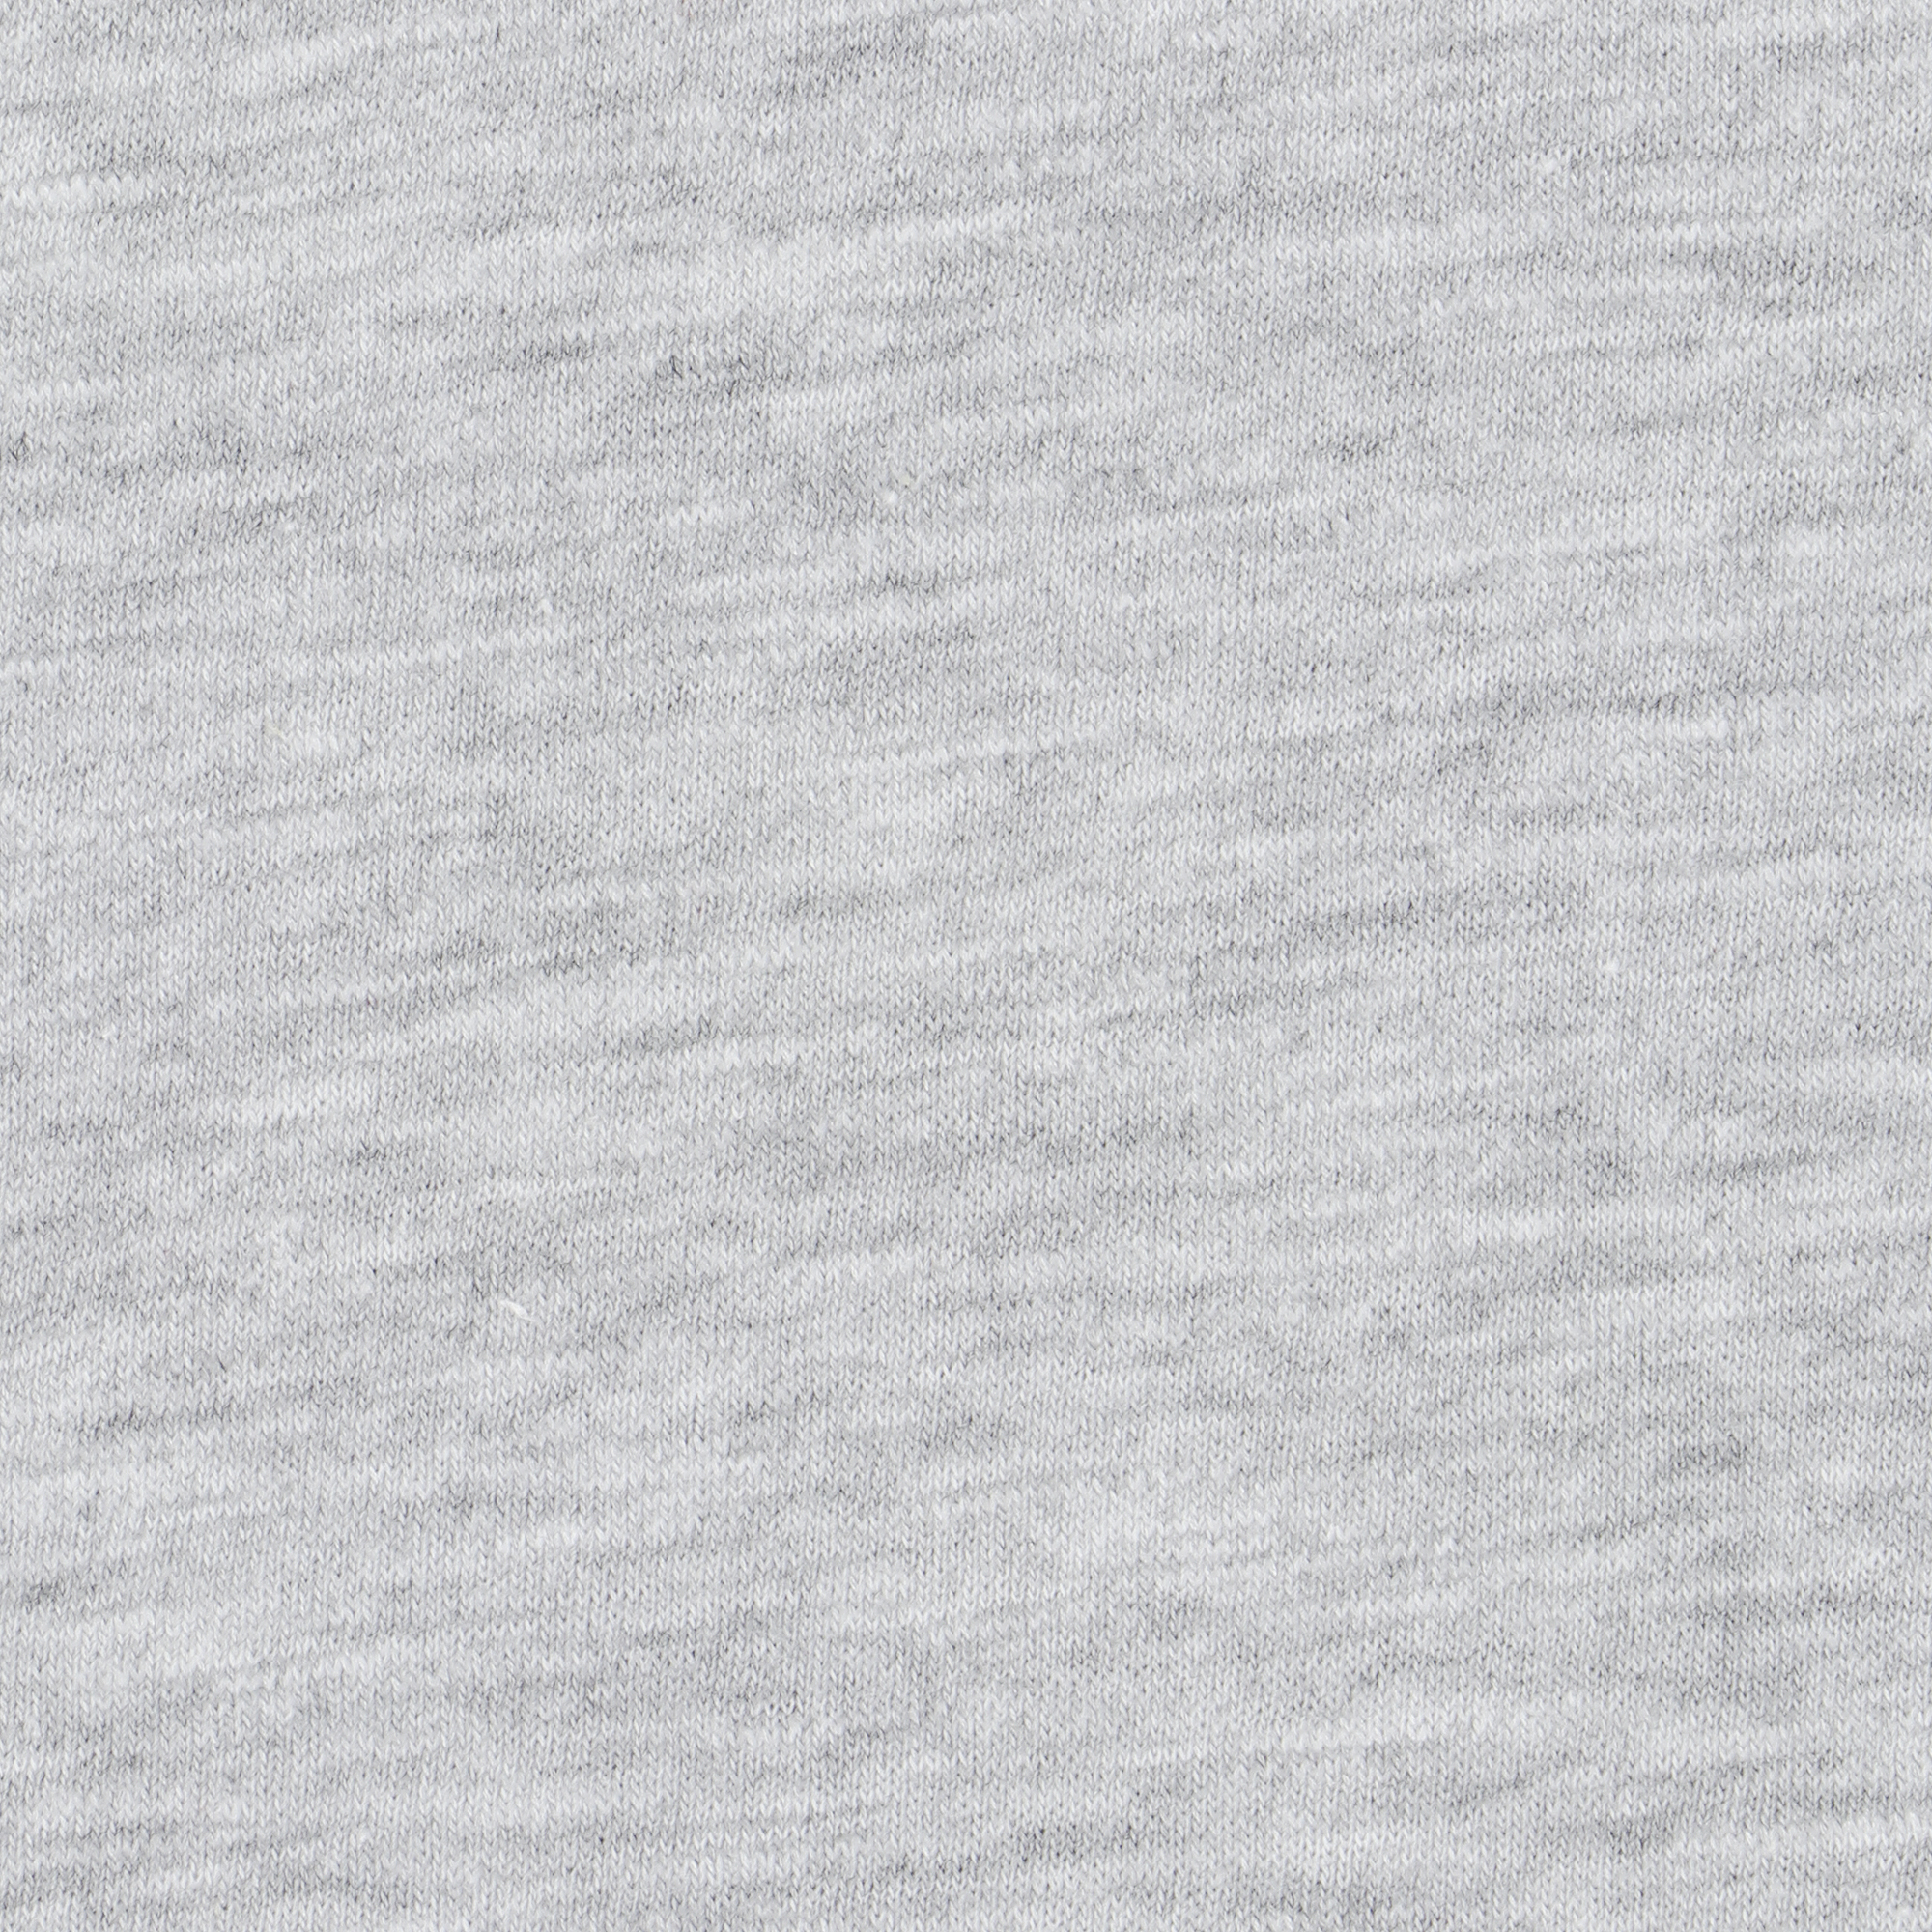 Футболка мужская Pantelemone MF-907 серый меланж 48, размер 48 - фото 3